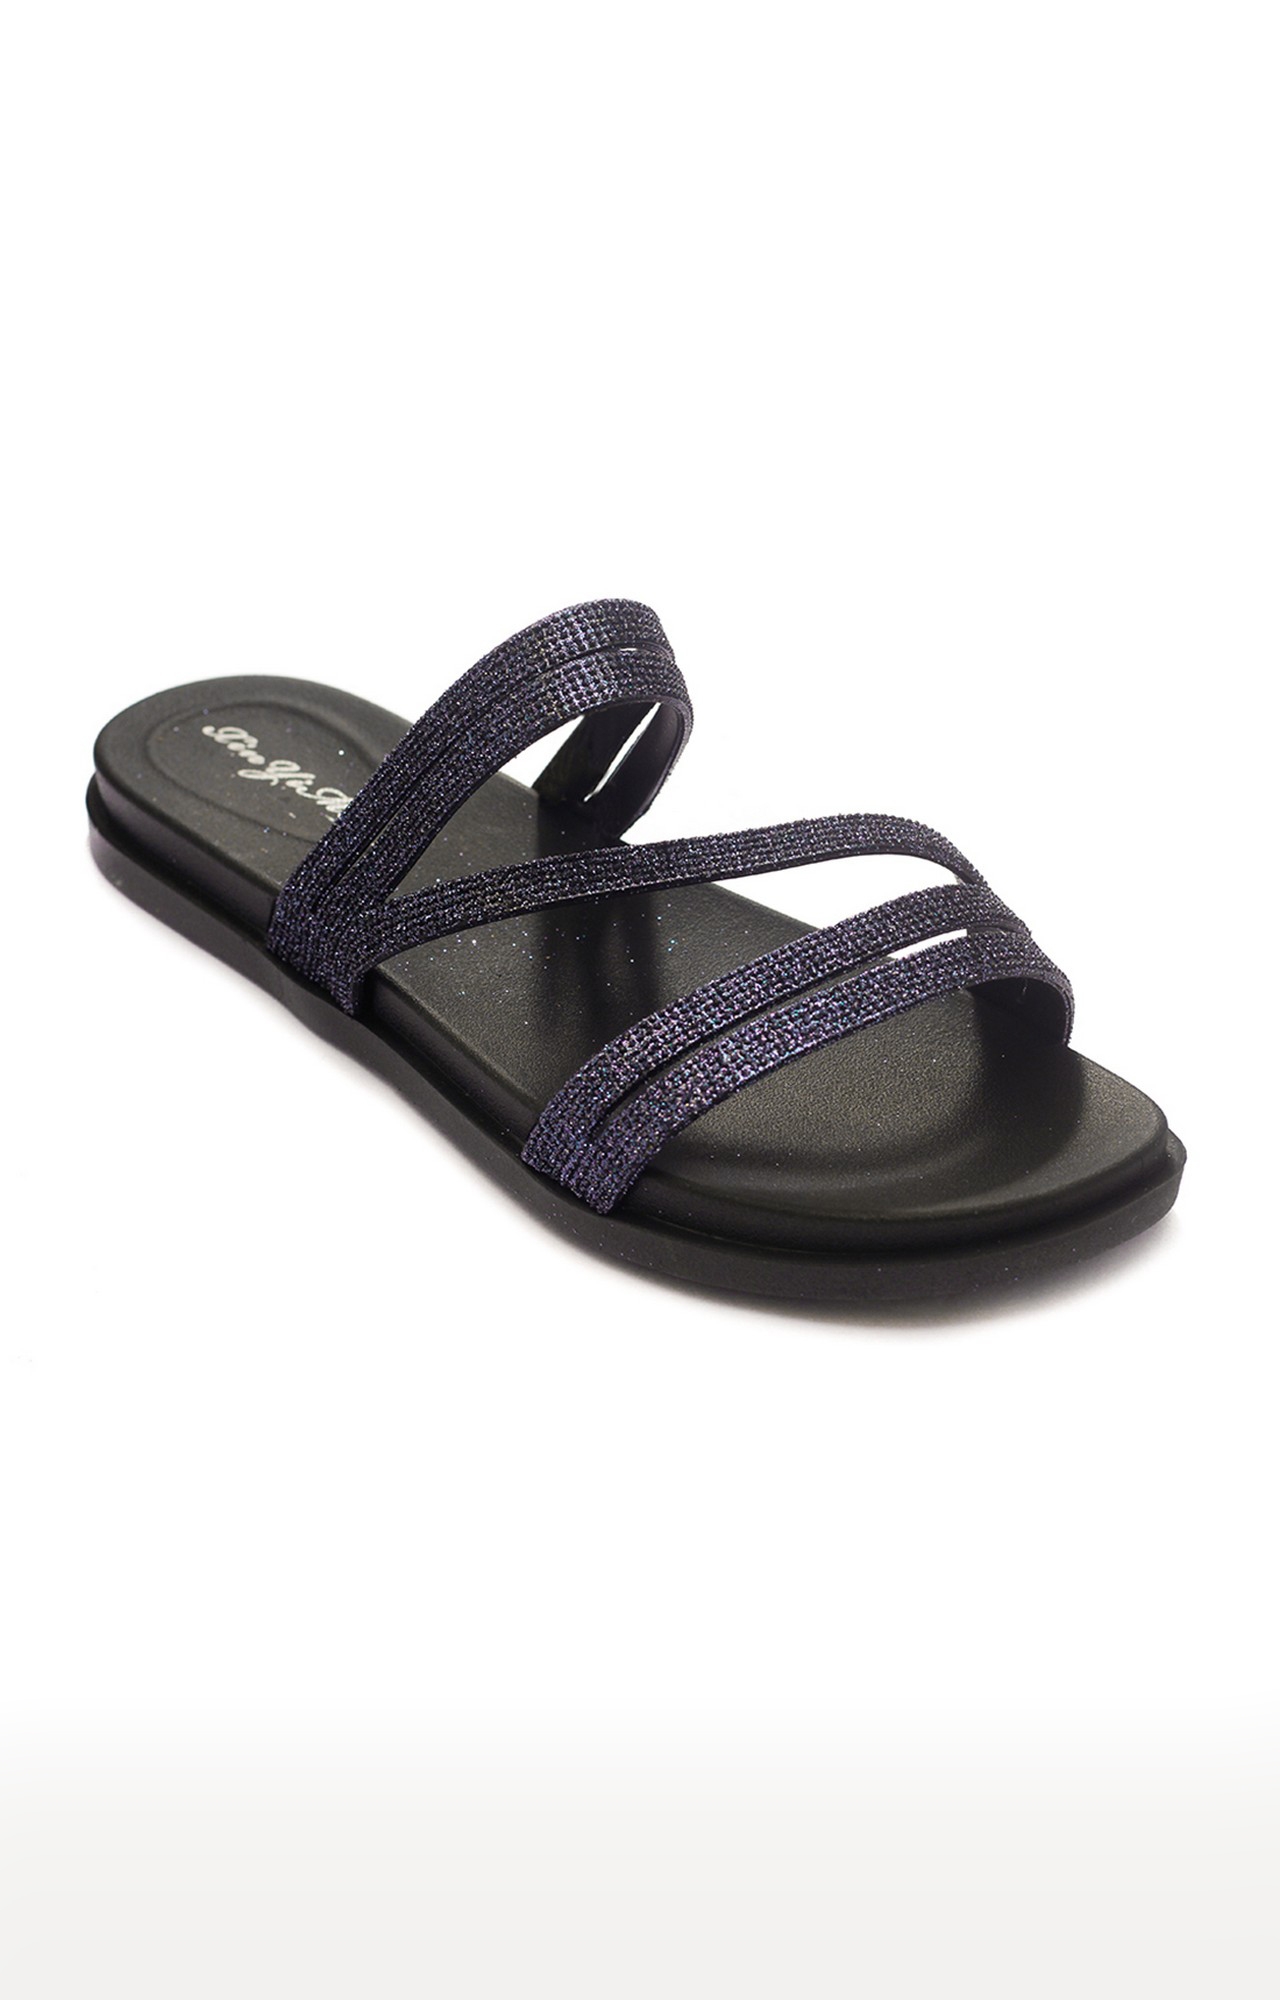 Trends & Trades | Black Flat Slip-Ons Sandal For Women 0